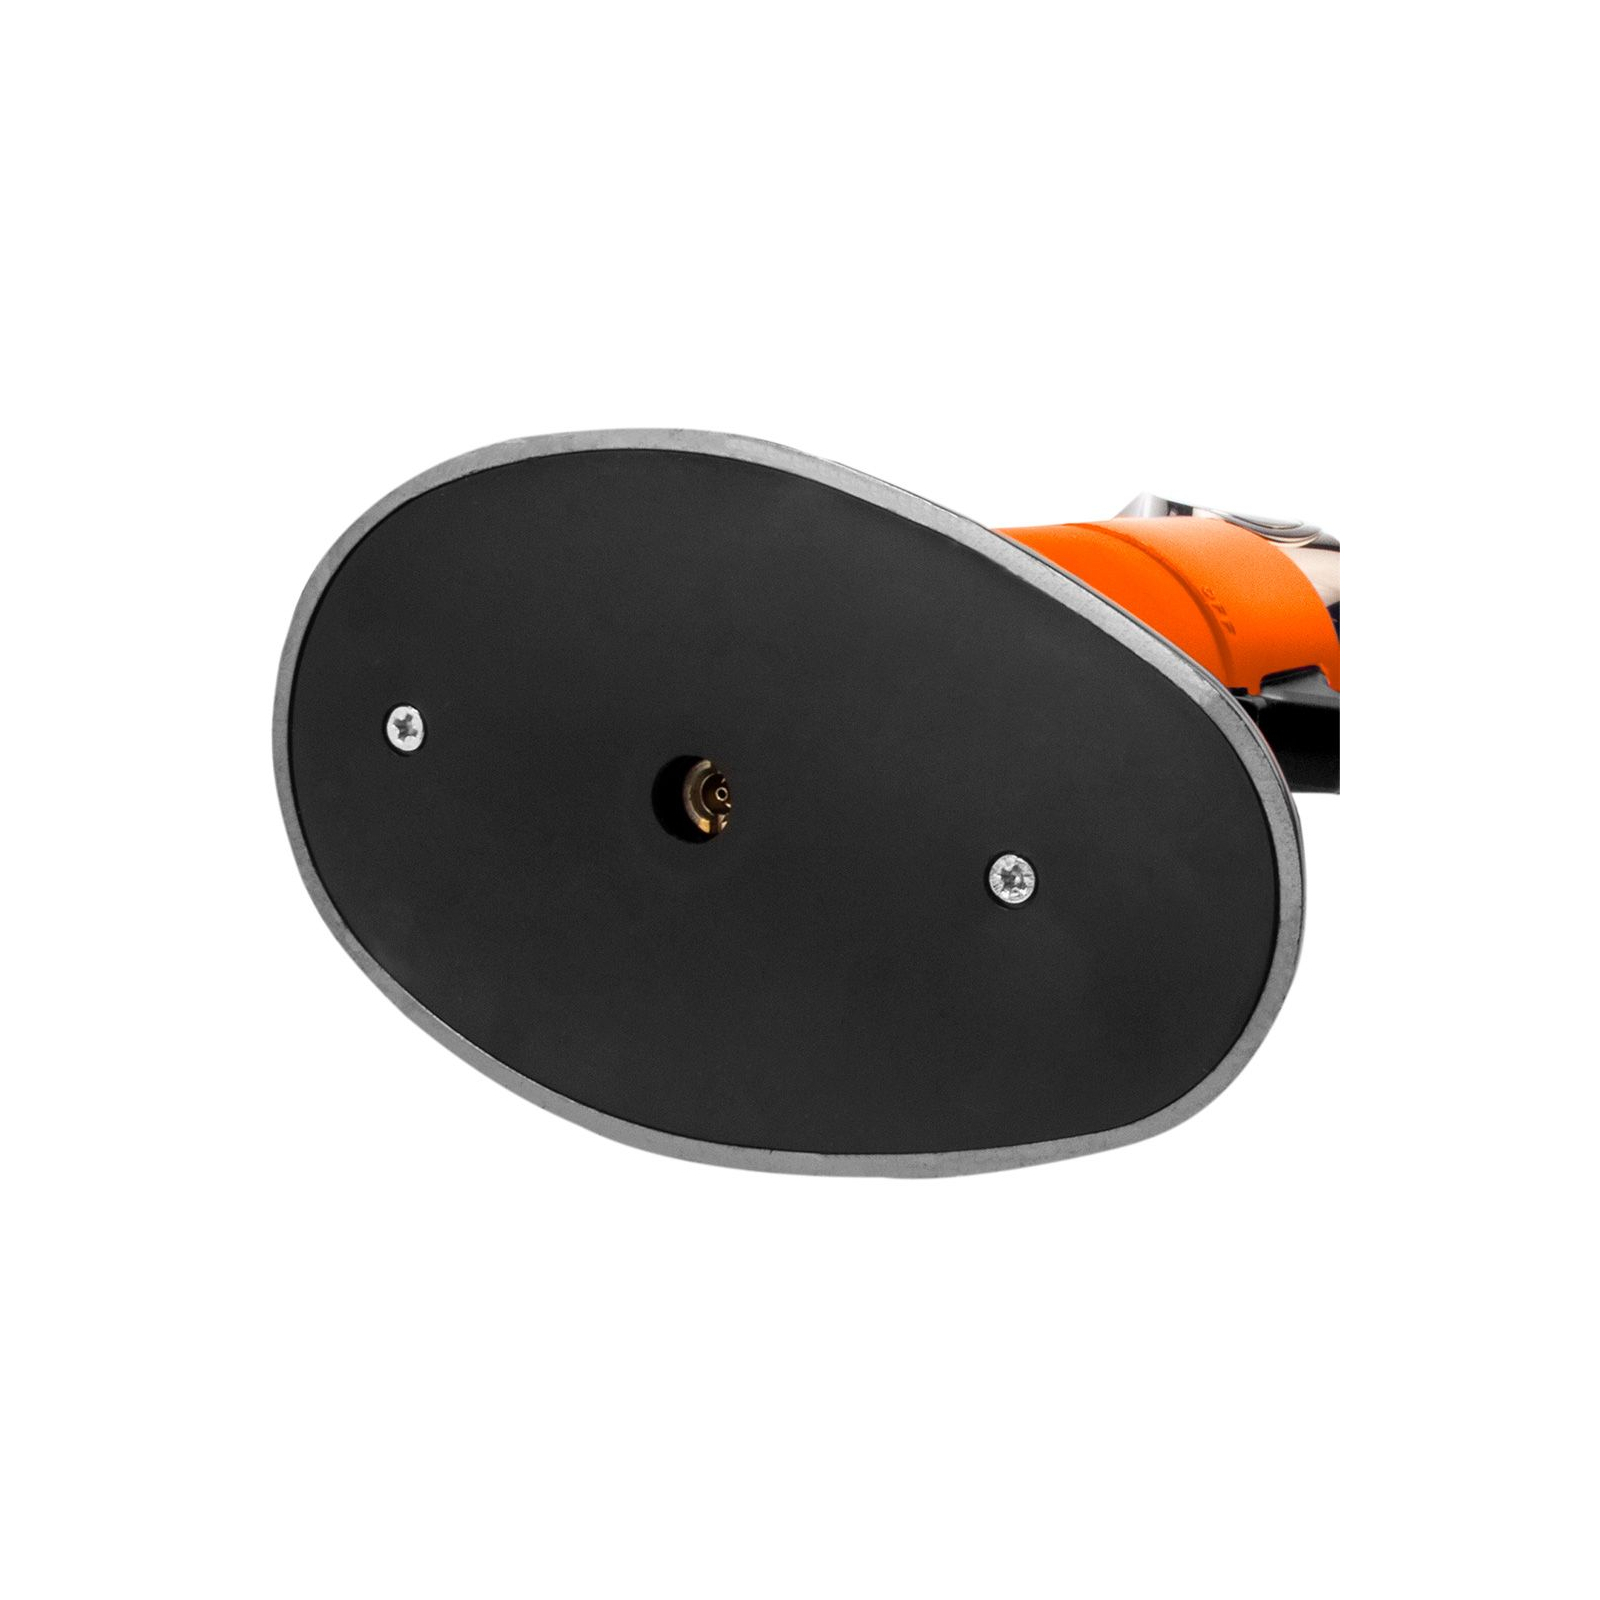 Газовый паяльник Neo Tools поворотный, пьезоподжиг, 1350°C, объем 7.8г, 340г (19-904) изображение 6